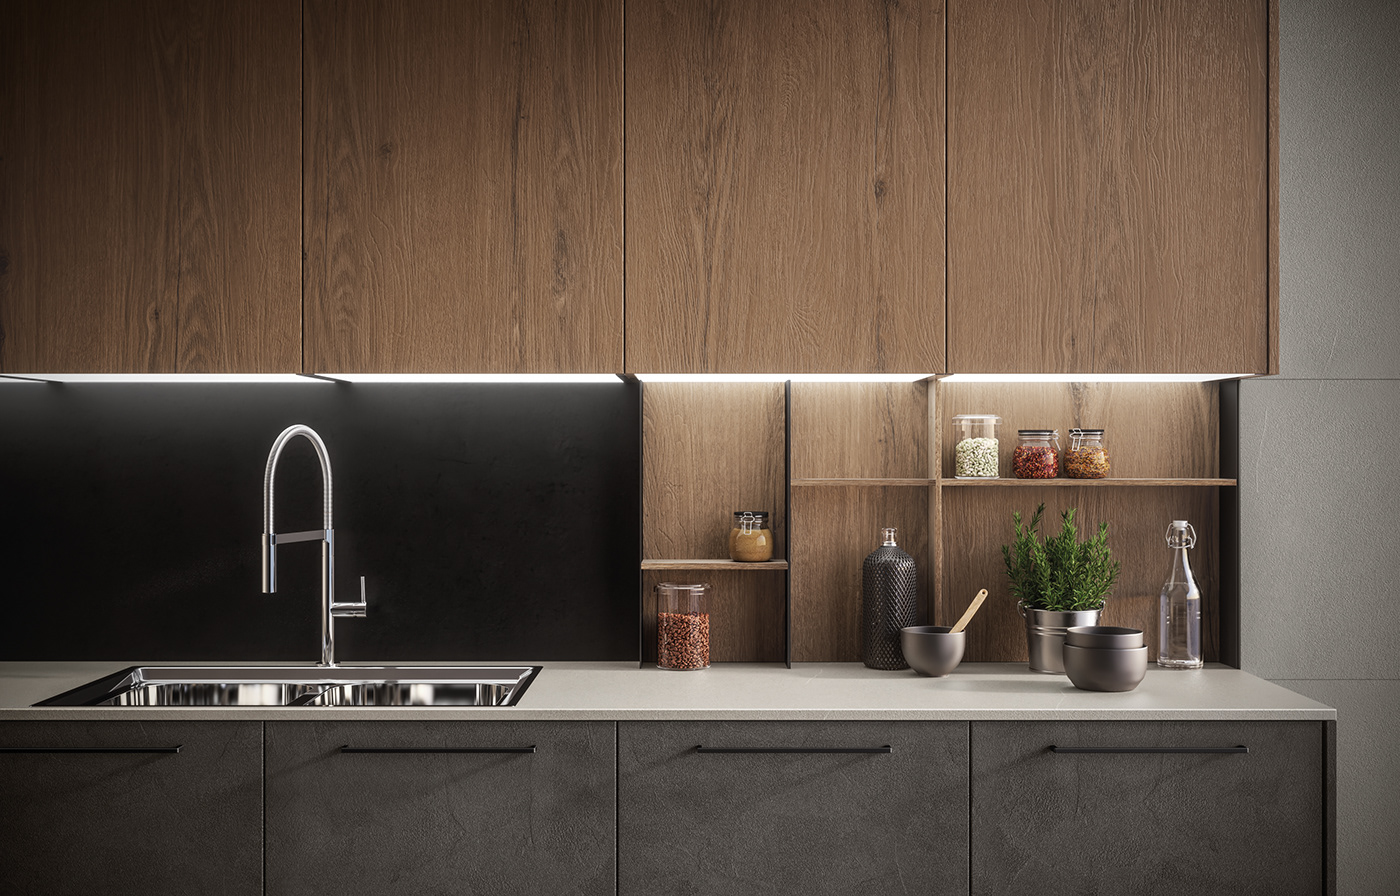 kitchen design inspiration inspiration 2019 Interior modern kitchen new 2019 design 2019